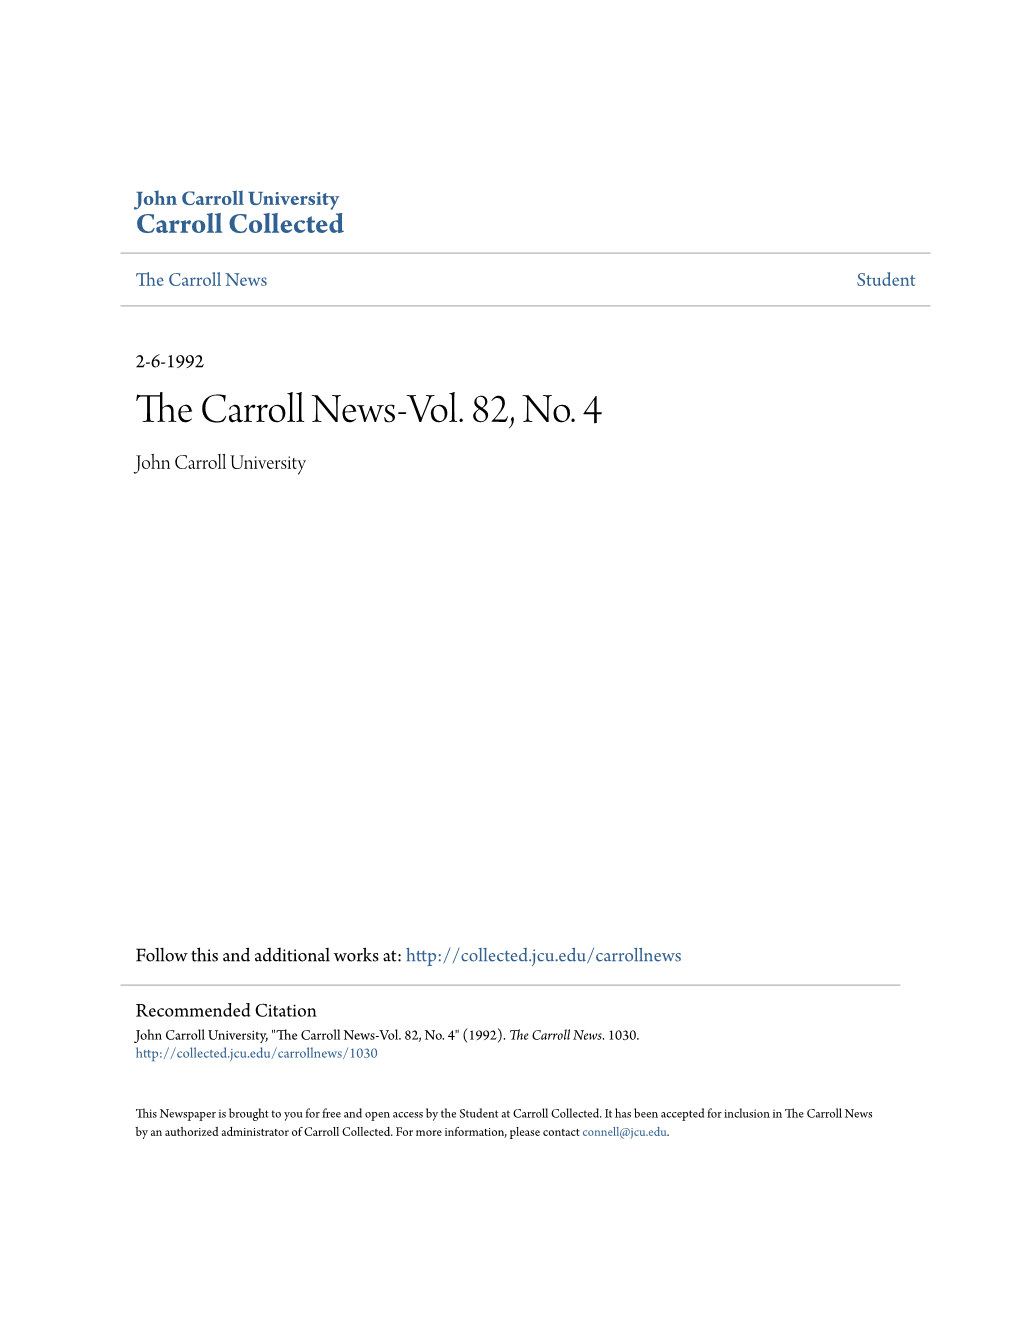 The Carroll News-Vol. 82, No. 4